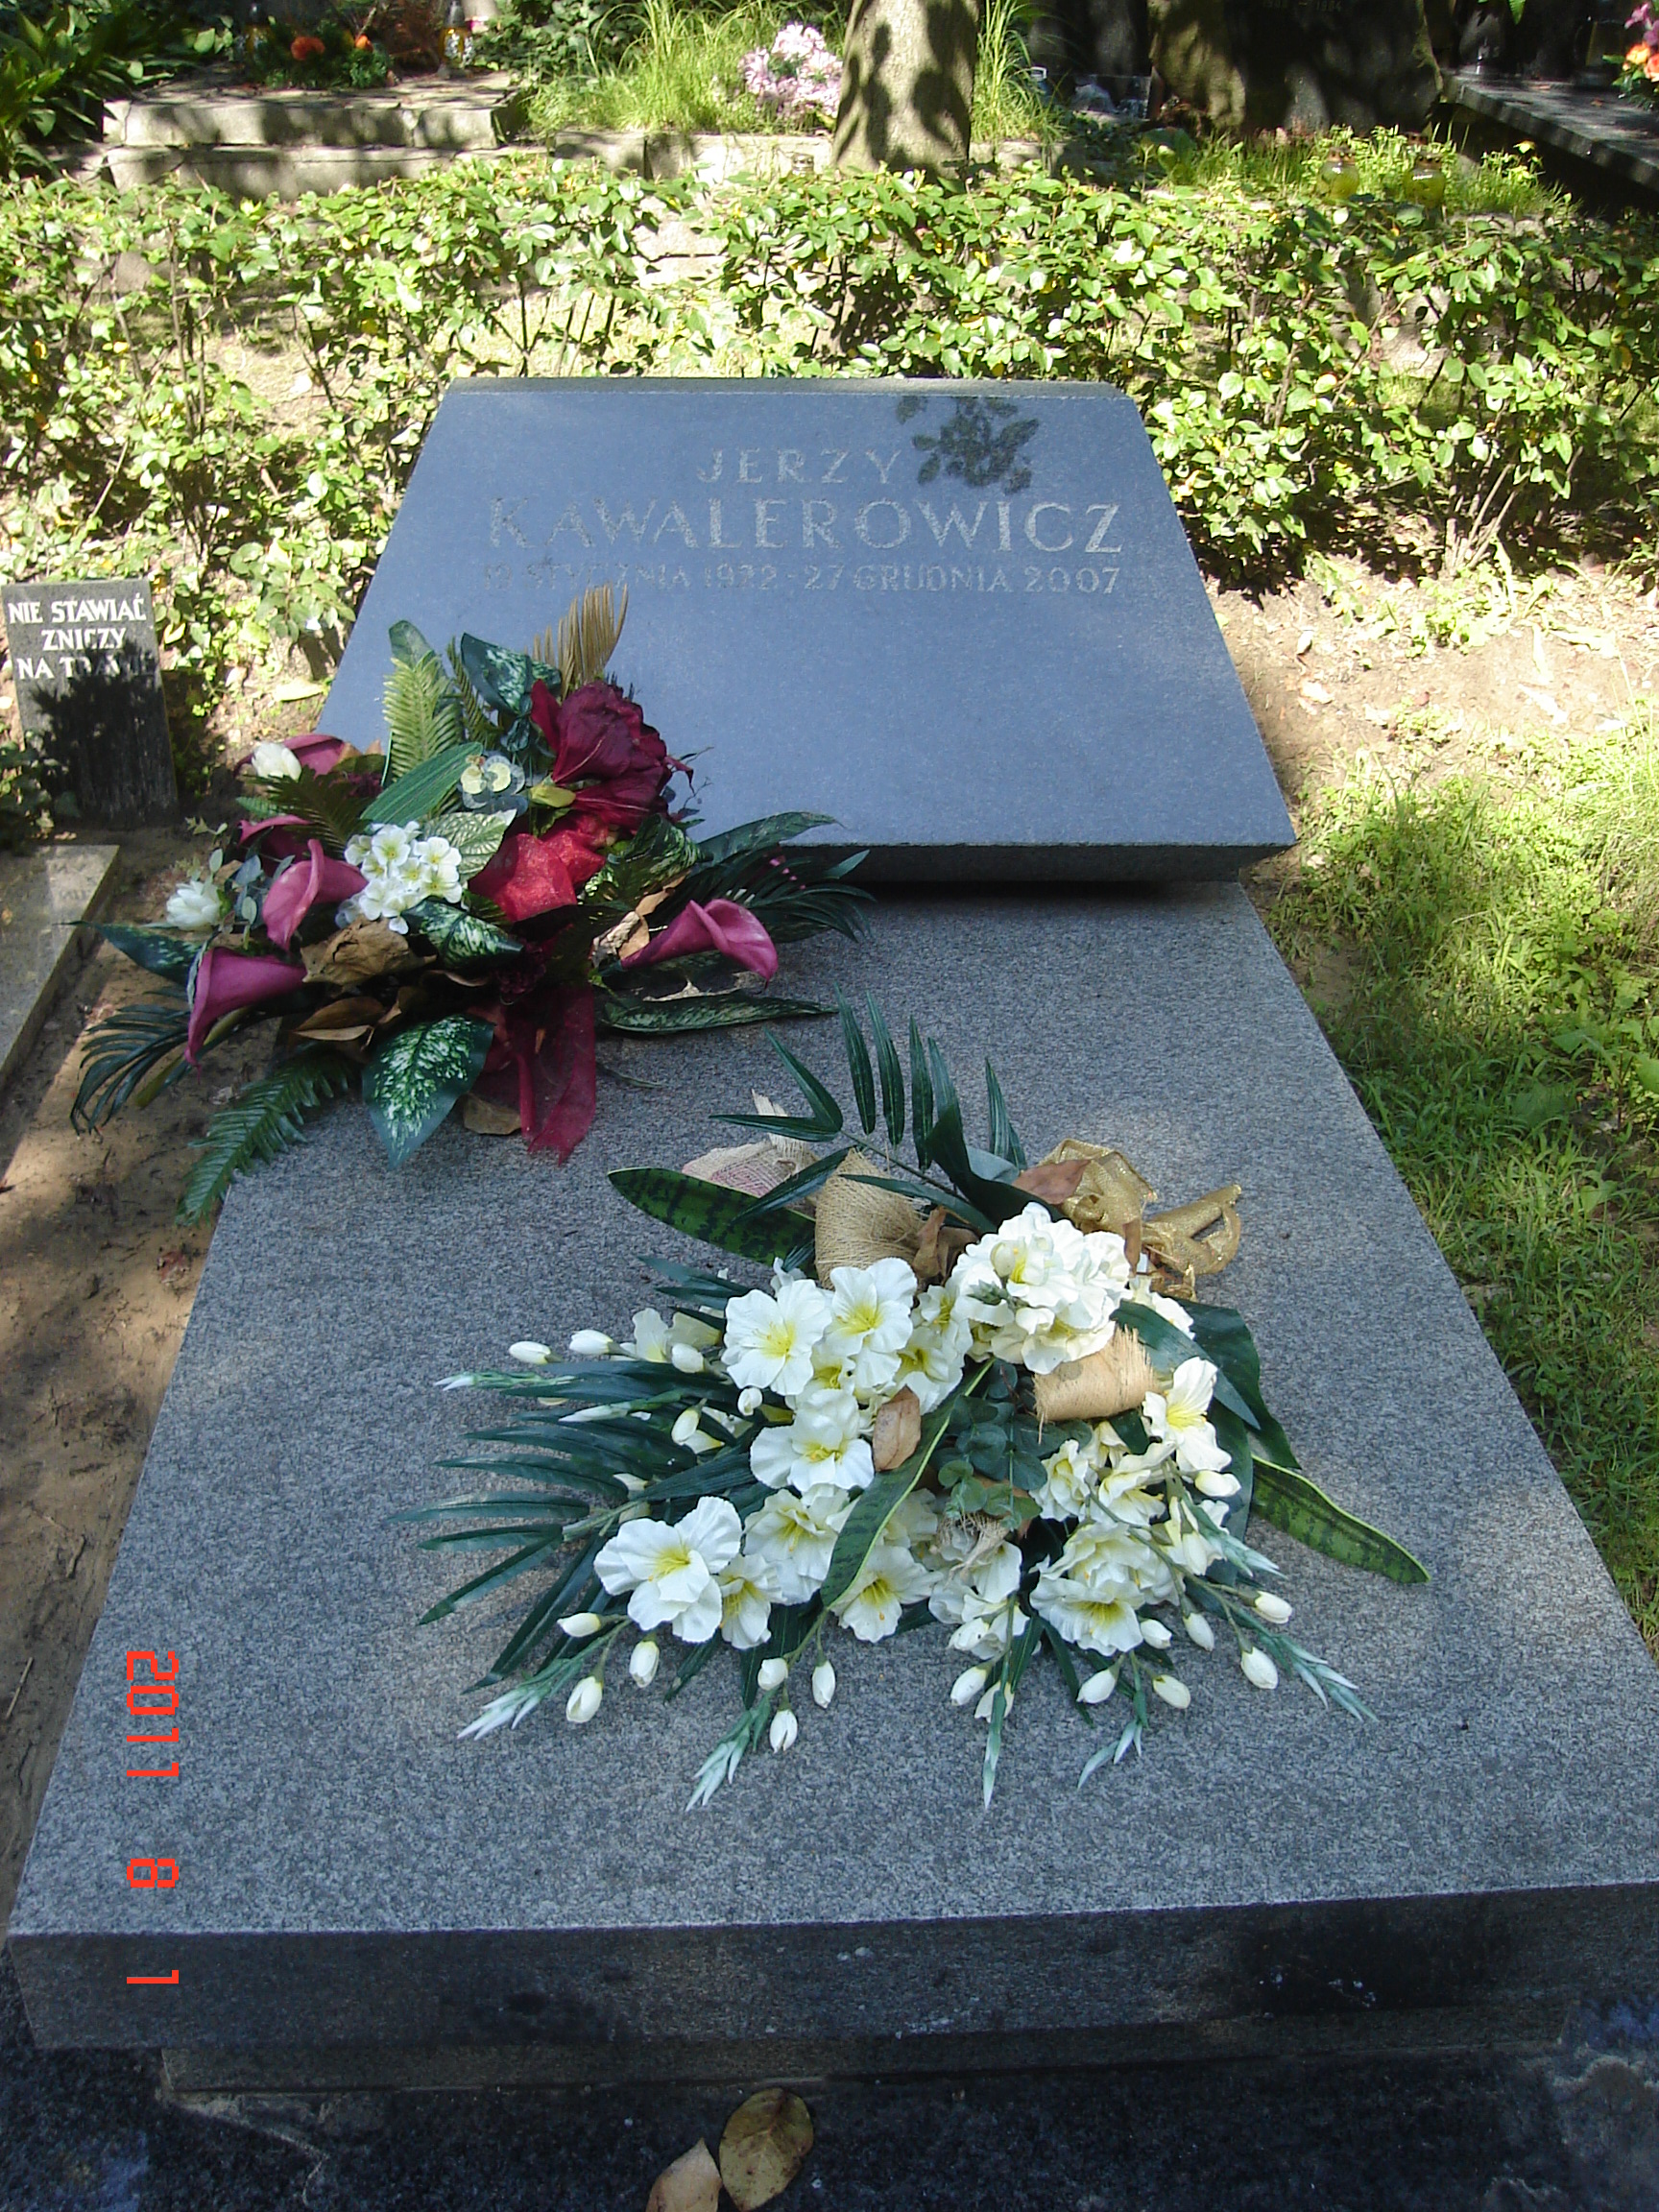 Wikipedia, Jerzy Kawalerowicz, Self-published work, Warsaw Military Cemetery - K